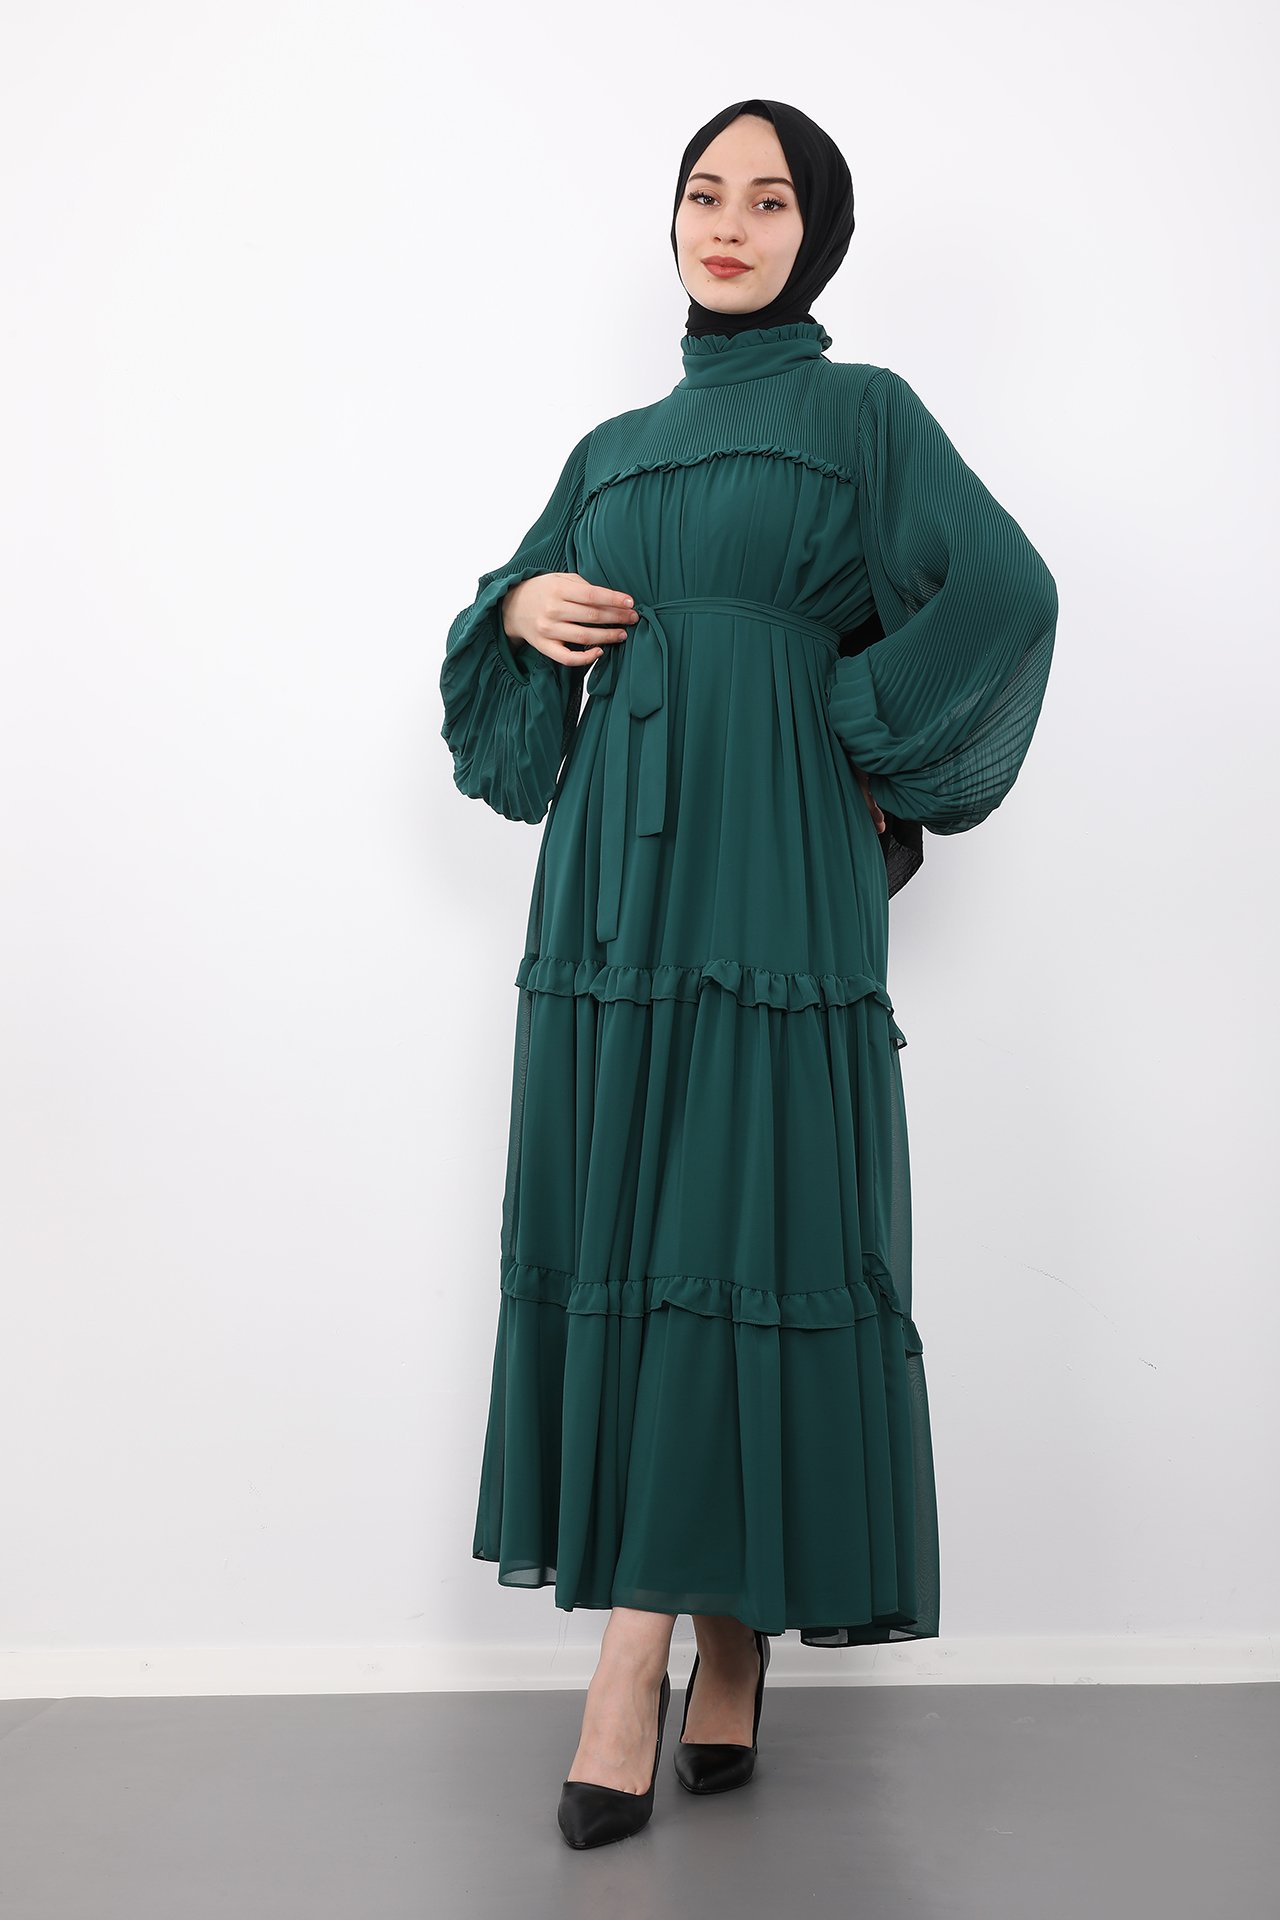 GİZAGİYİM - Fırfırlı Pilisoley Şifon Elbise Zümrüt